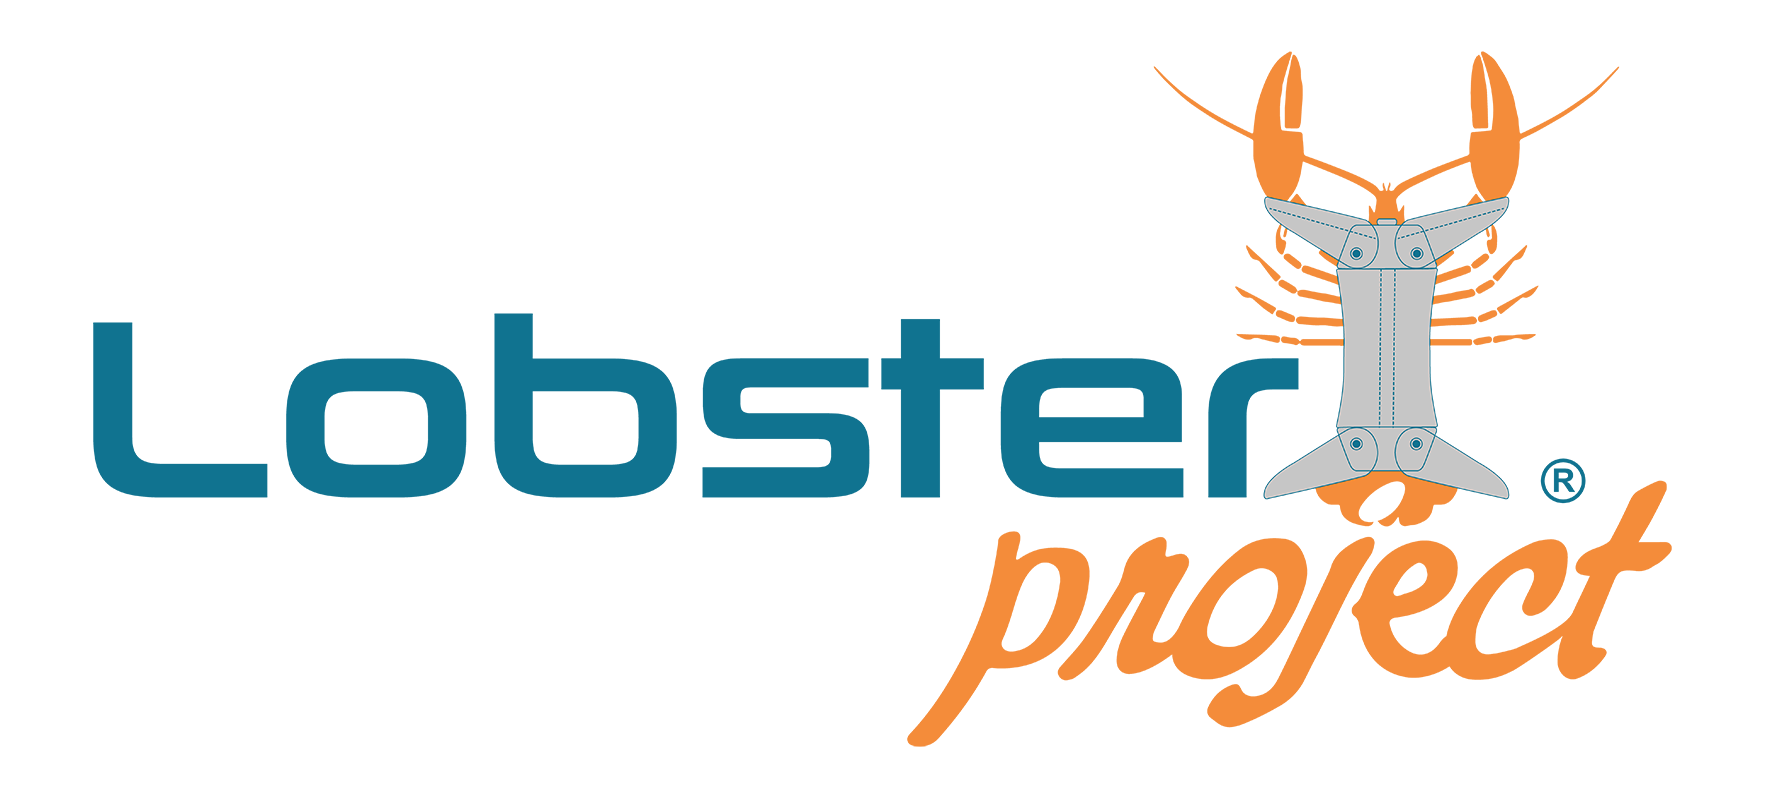 LobsterProject